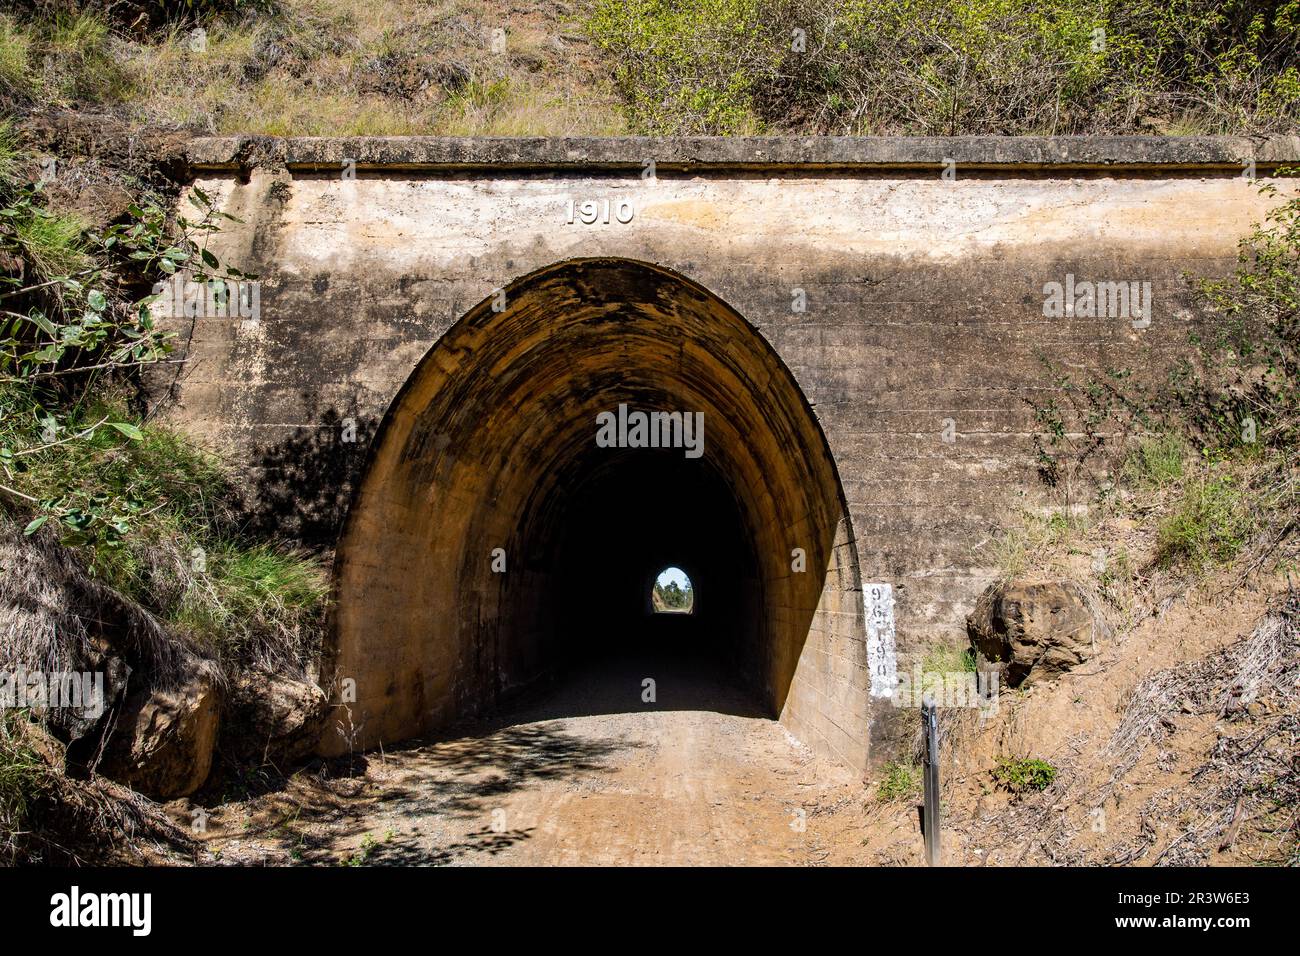 Le tunnel ferroviaire Yimbun, construit de 1909 à 1910, est un tunnel droit 100m bordé de béton à Harlin, dans la région du Somerset, dans le Queensland, en Australie. Banque D'Images